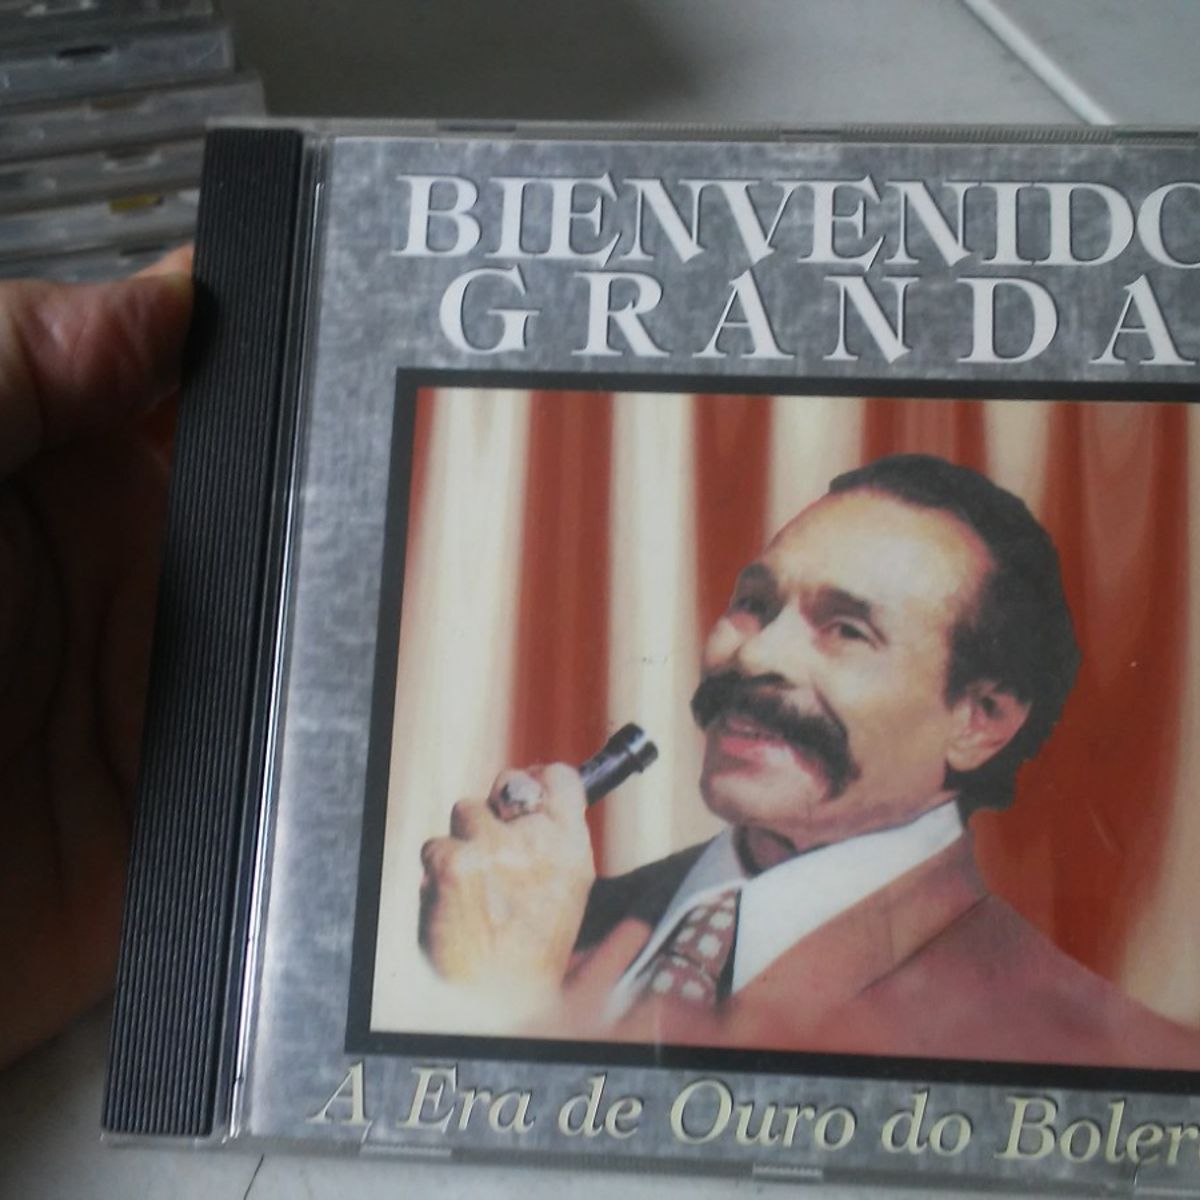 CD Album - Bienvenido Granda - Bienvenido Granda - Virtual DJ's - Bootleg